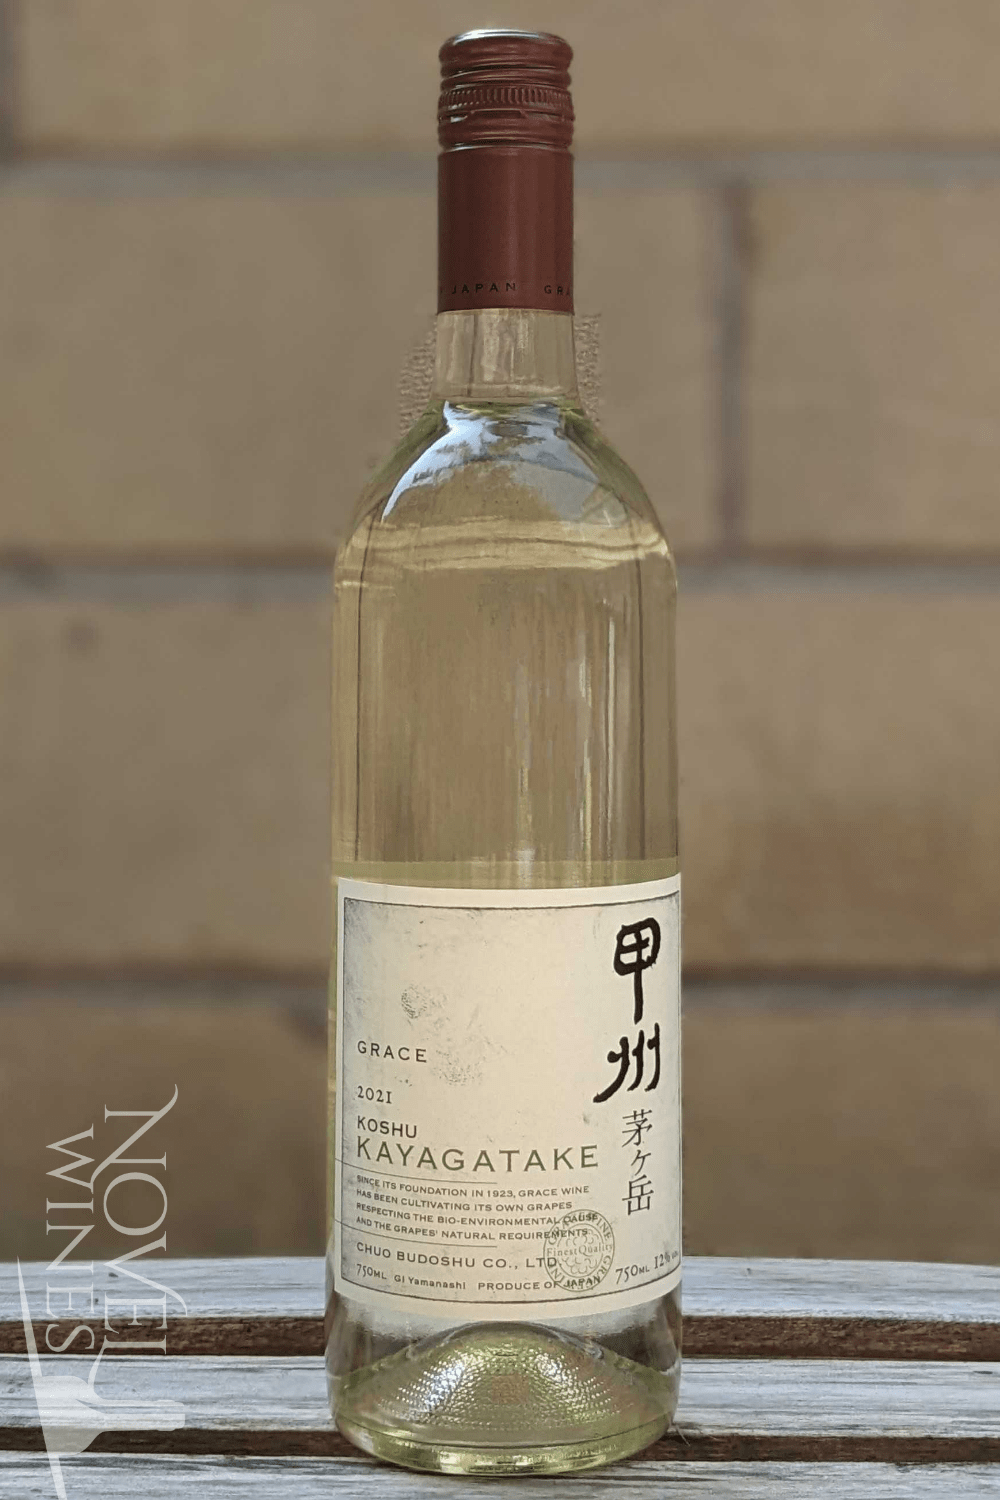 Grace Winery White Wine Grace Koshu Kayagatake 2021, Japan